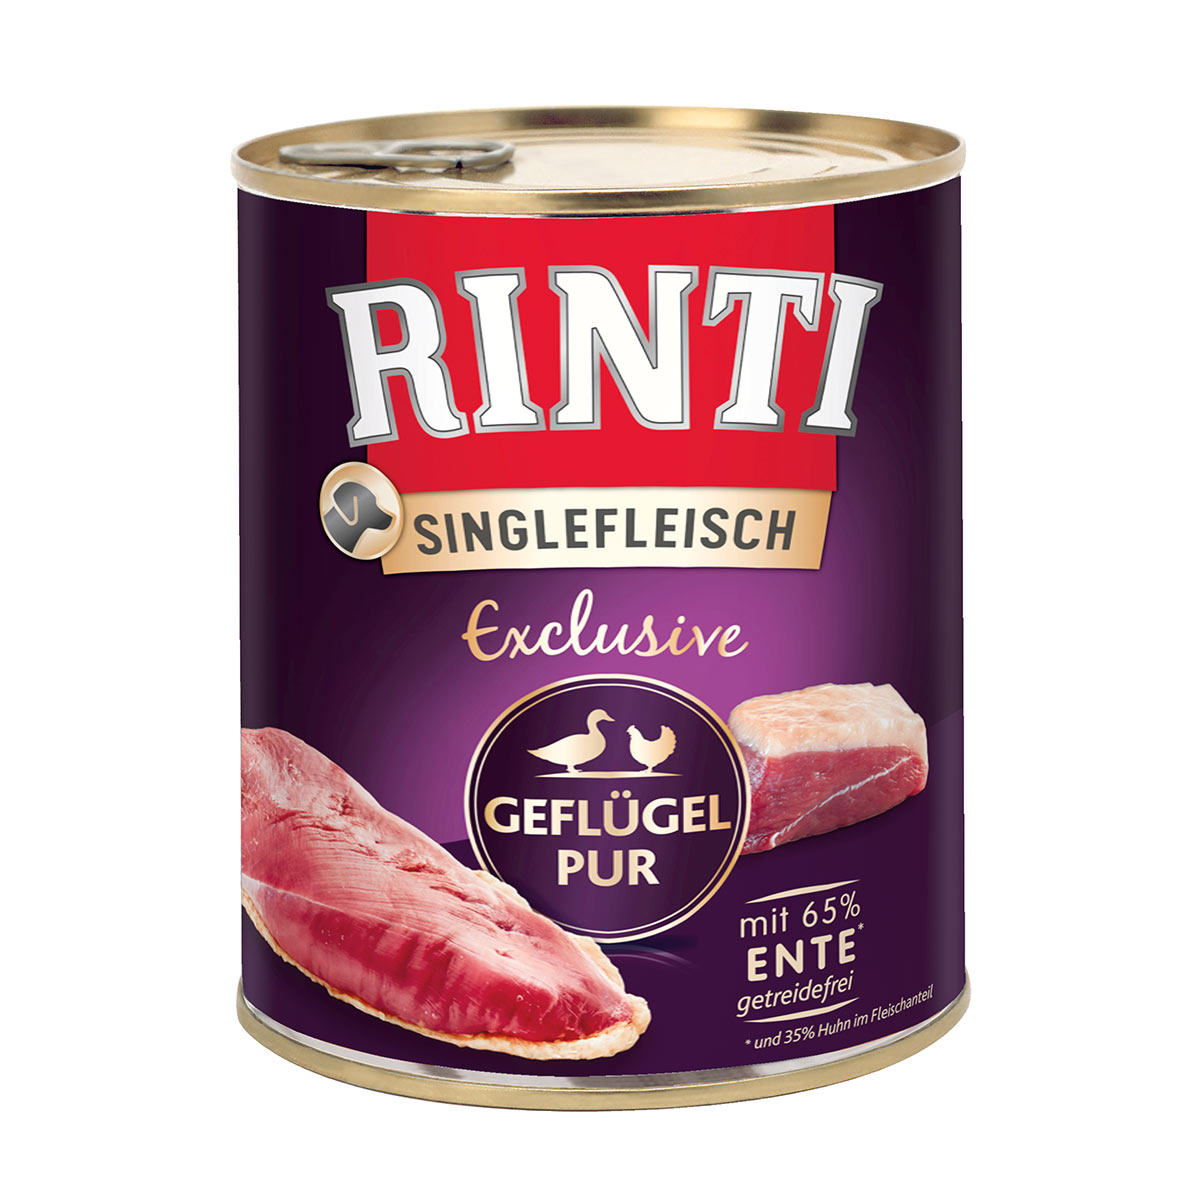 Rinti Singlefleisch Exclusive Geflügel pur 12x800g von Rinti